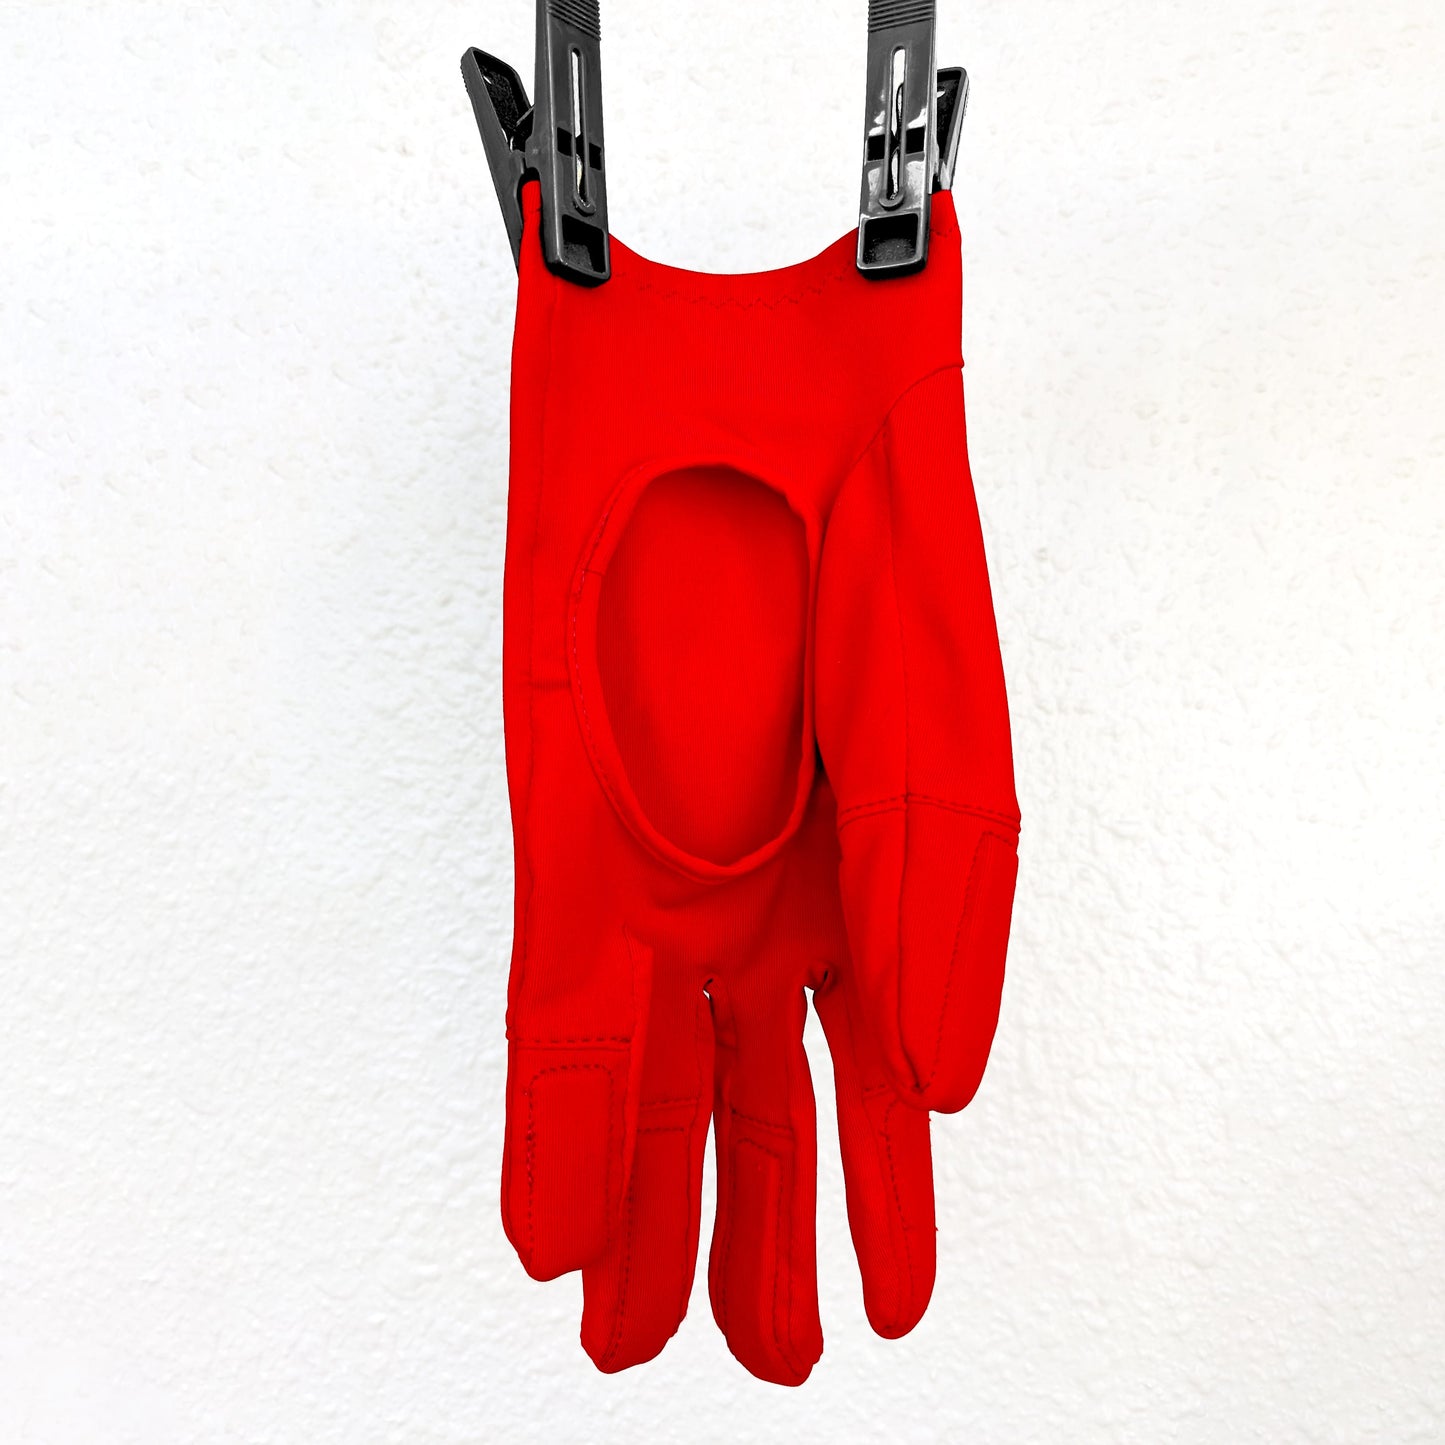 SPARS - Eye Pokes Prevention Gloves